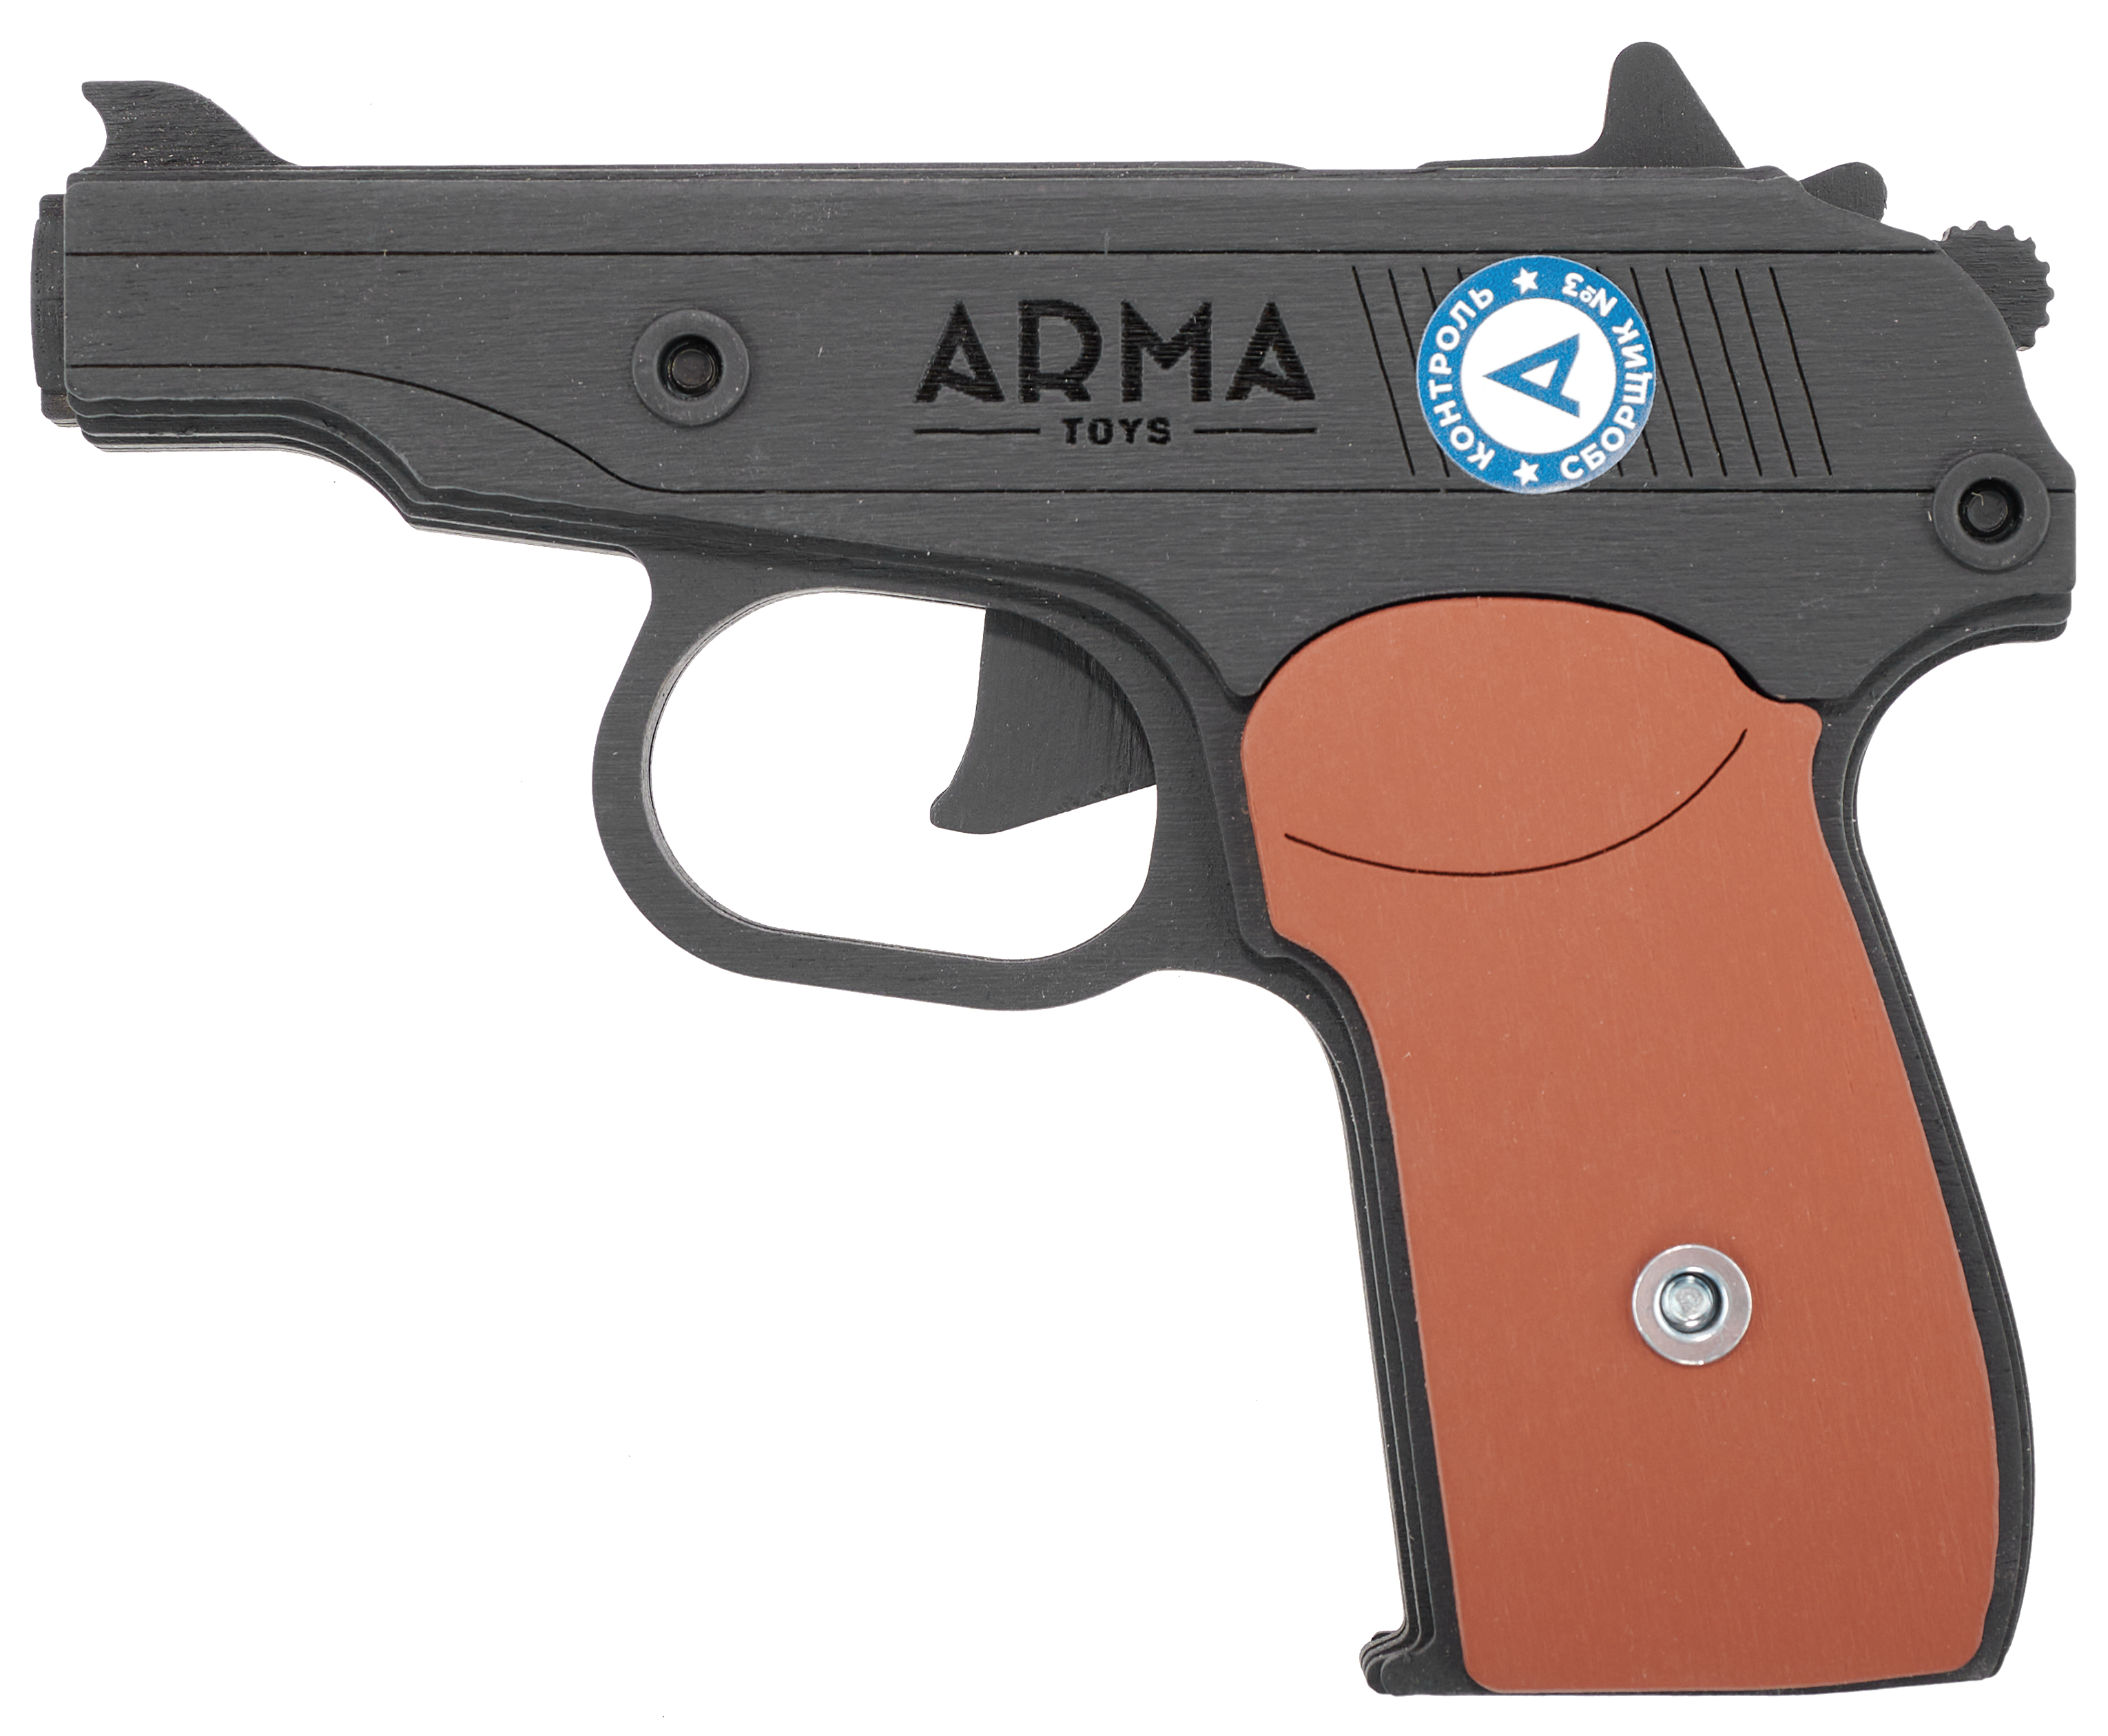 Резинкострел игрушечный Arma toys пистолет Макарова макет, ПМ, окрашенный, AT012K резинкострел игрушечный arma toys пистолет glock макет compact atl001